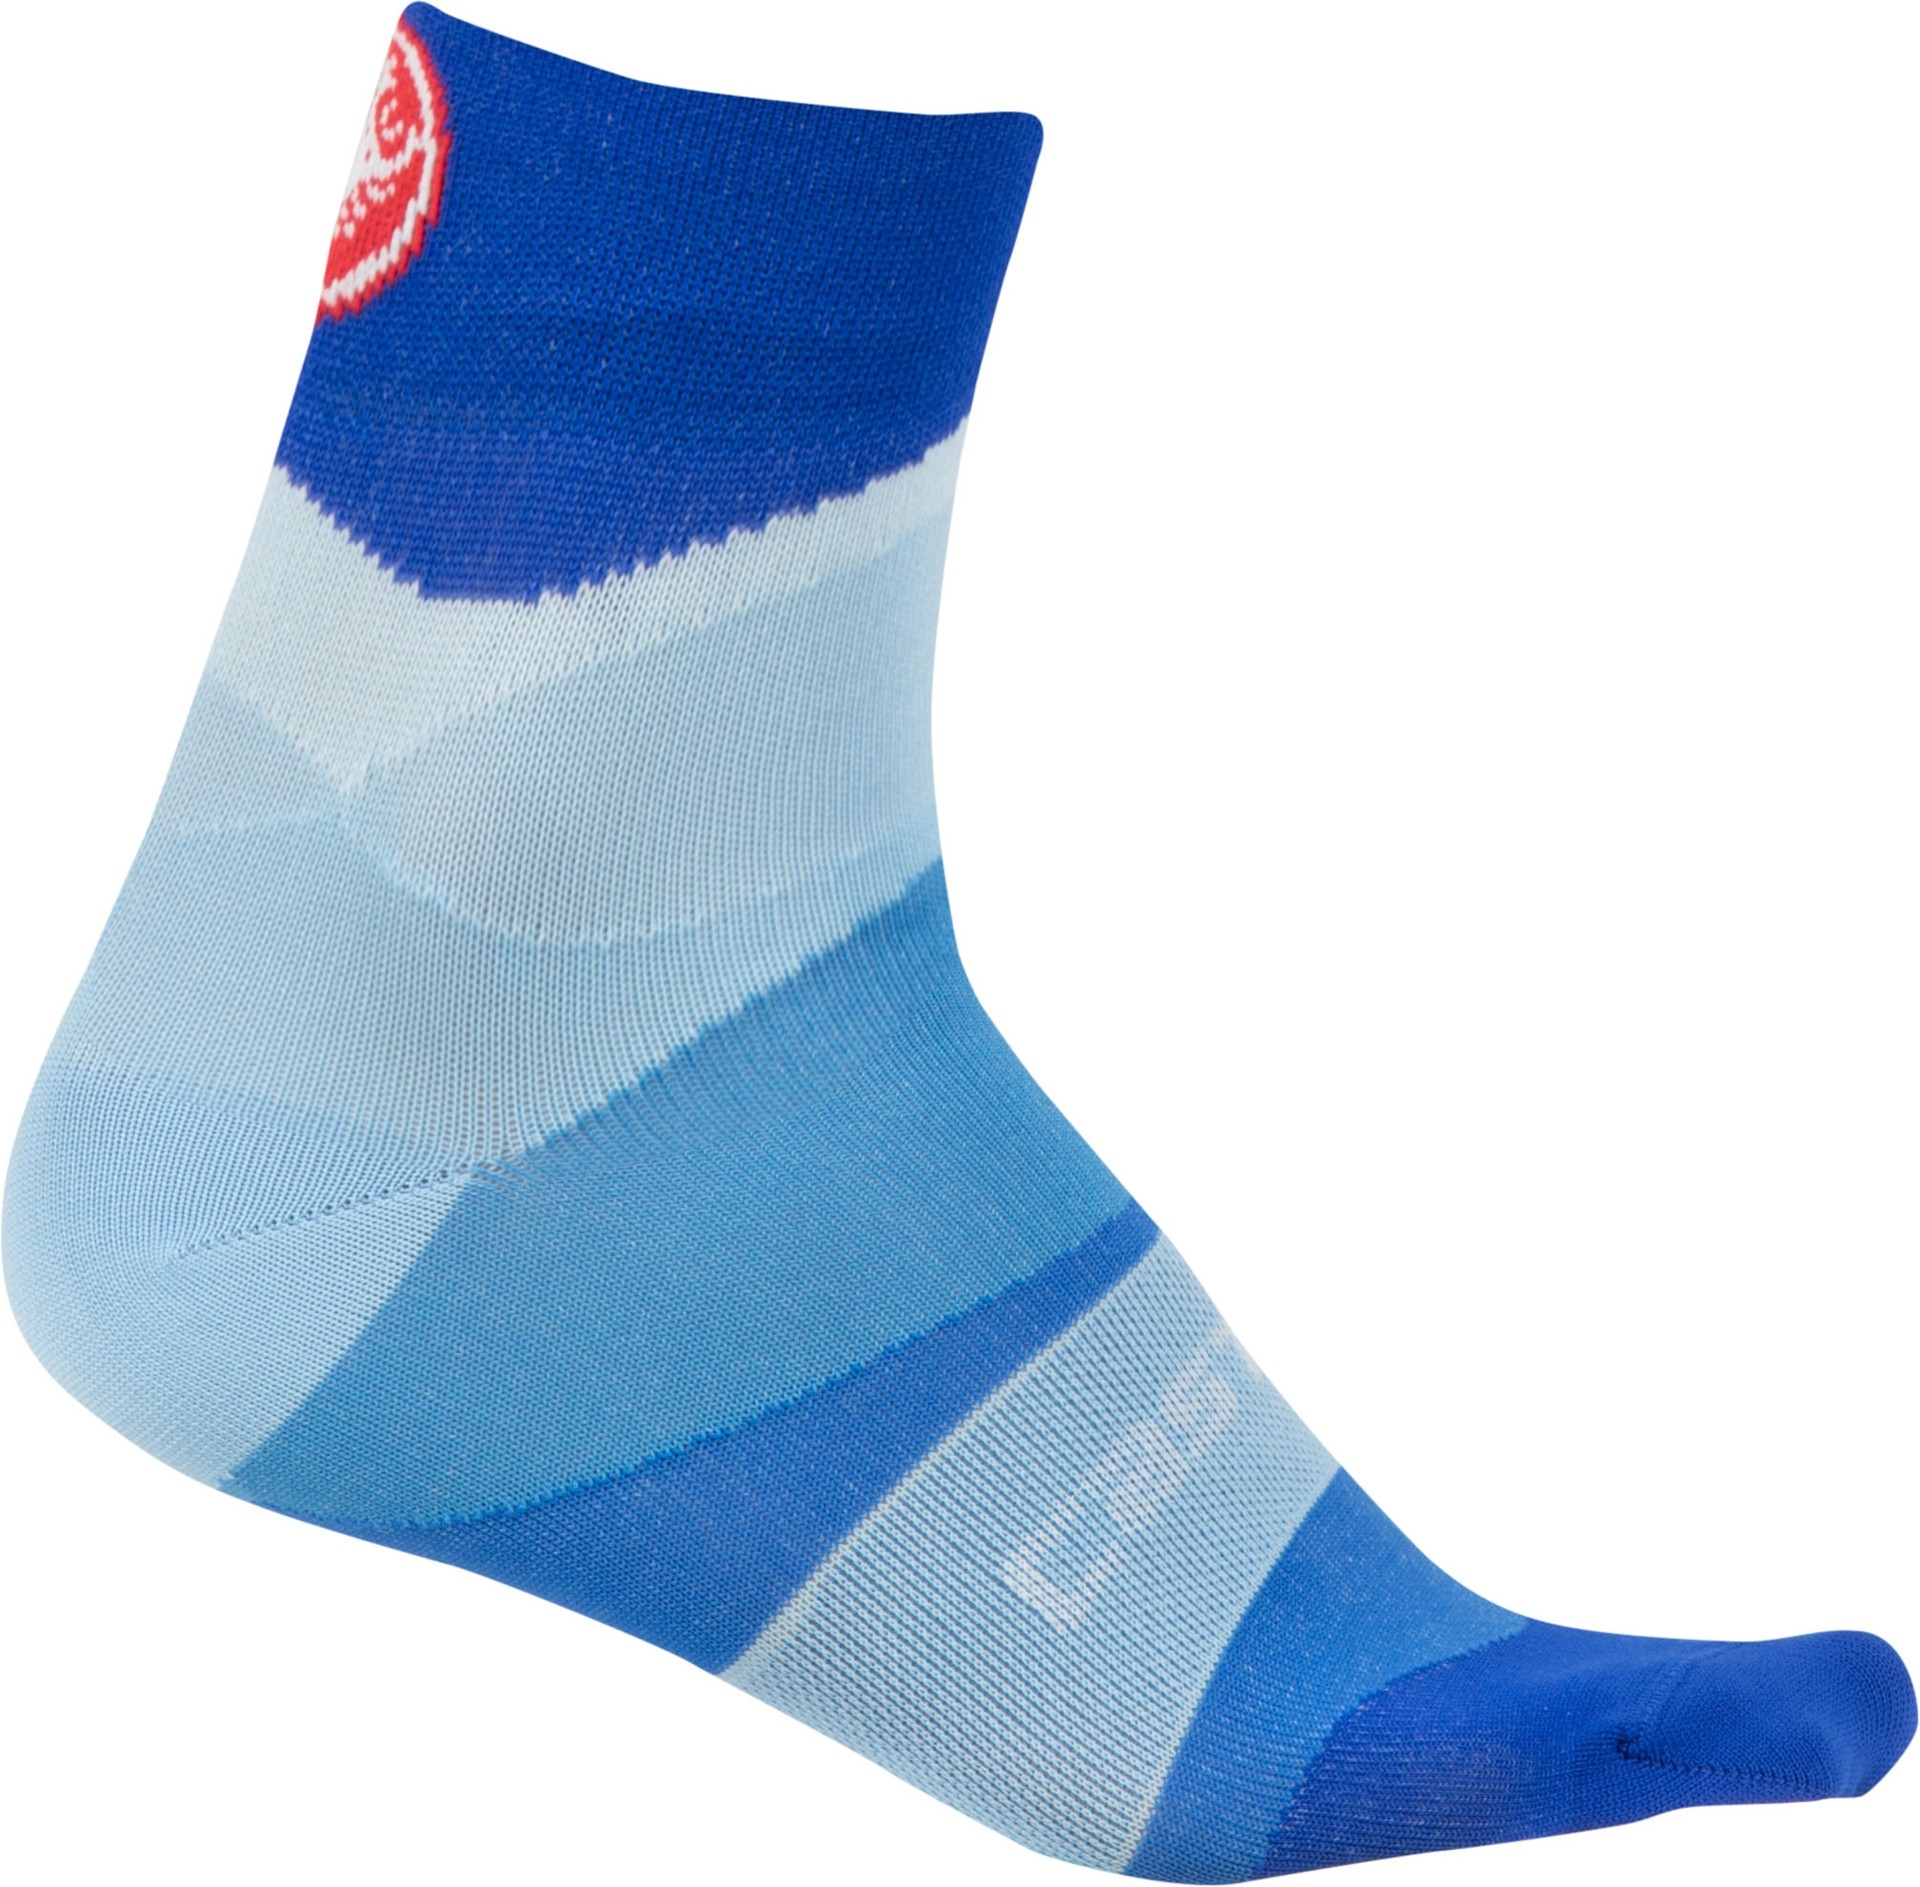 Castelli tr chaussettes de cyclisme femme onda bleu